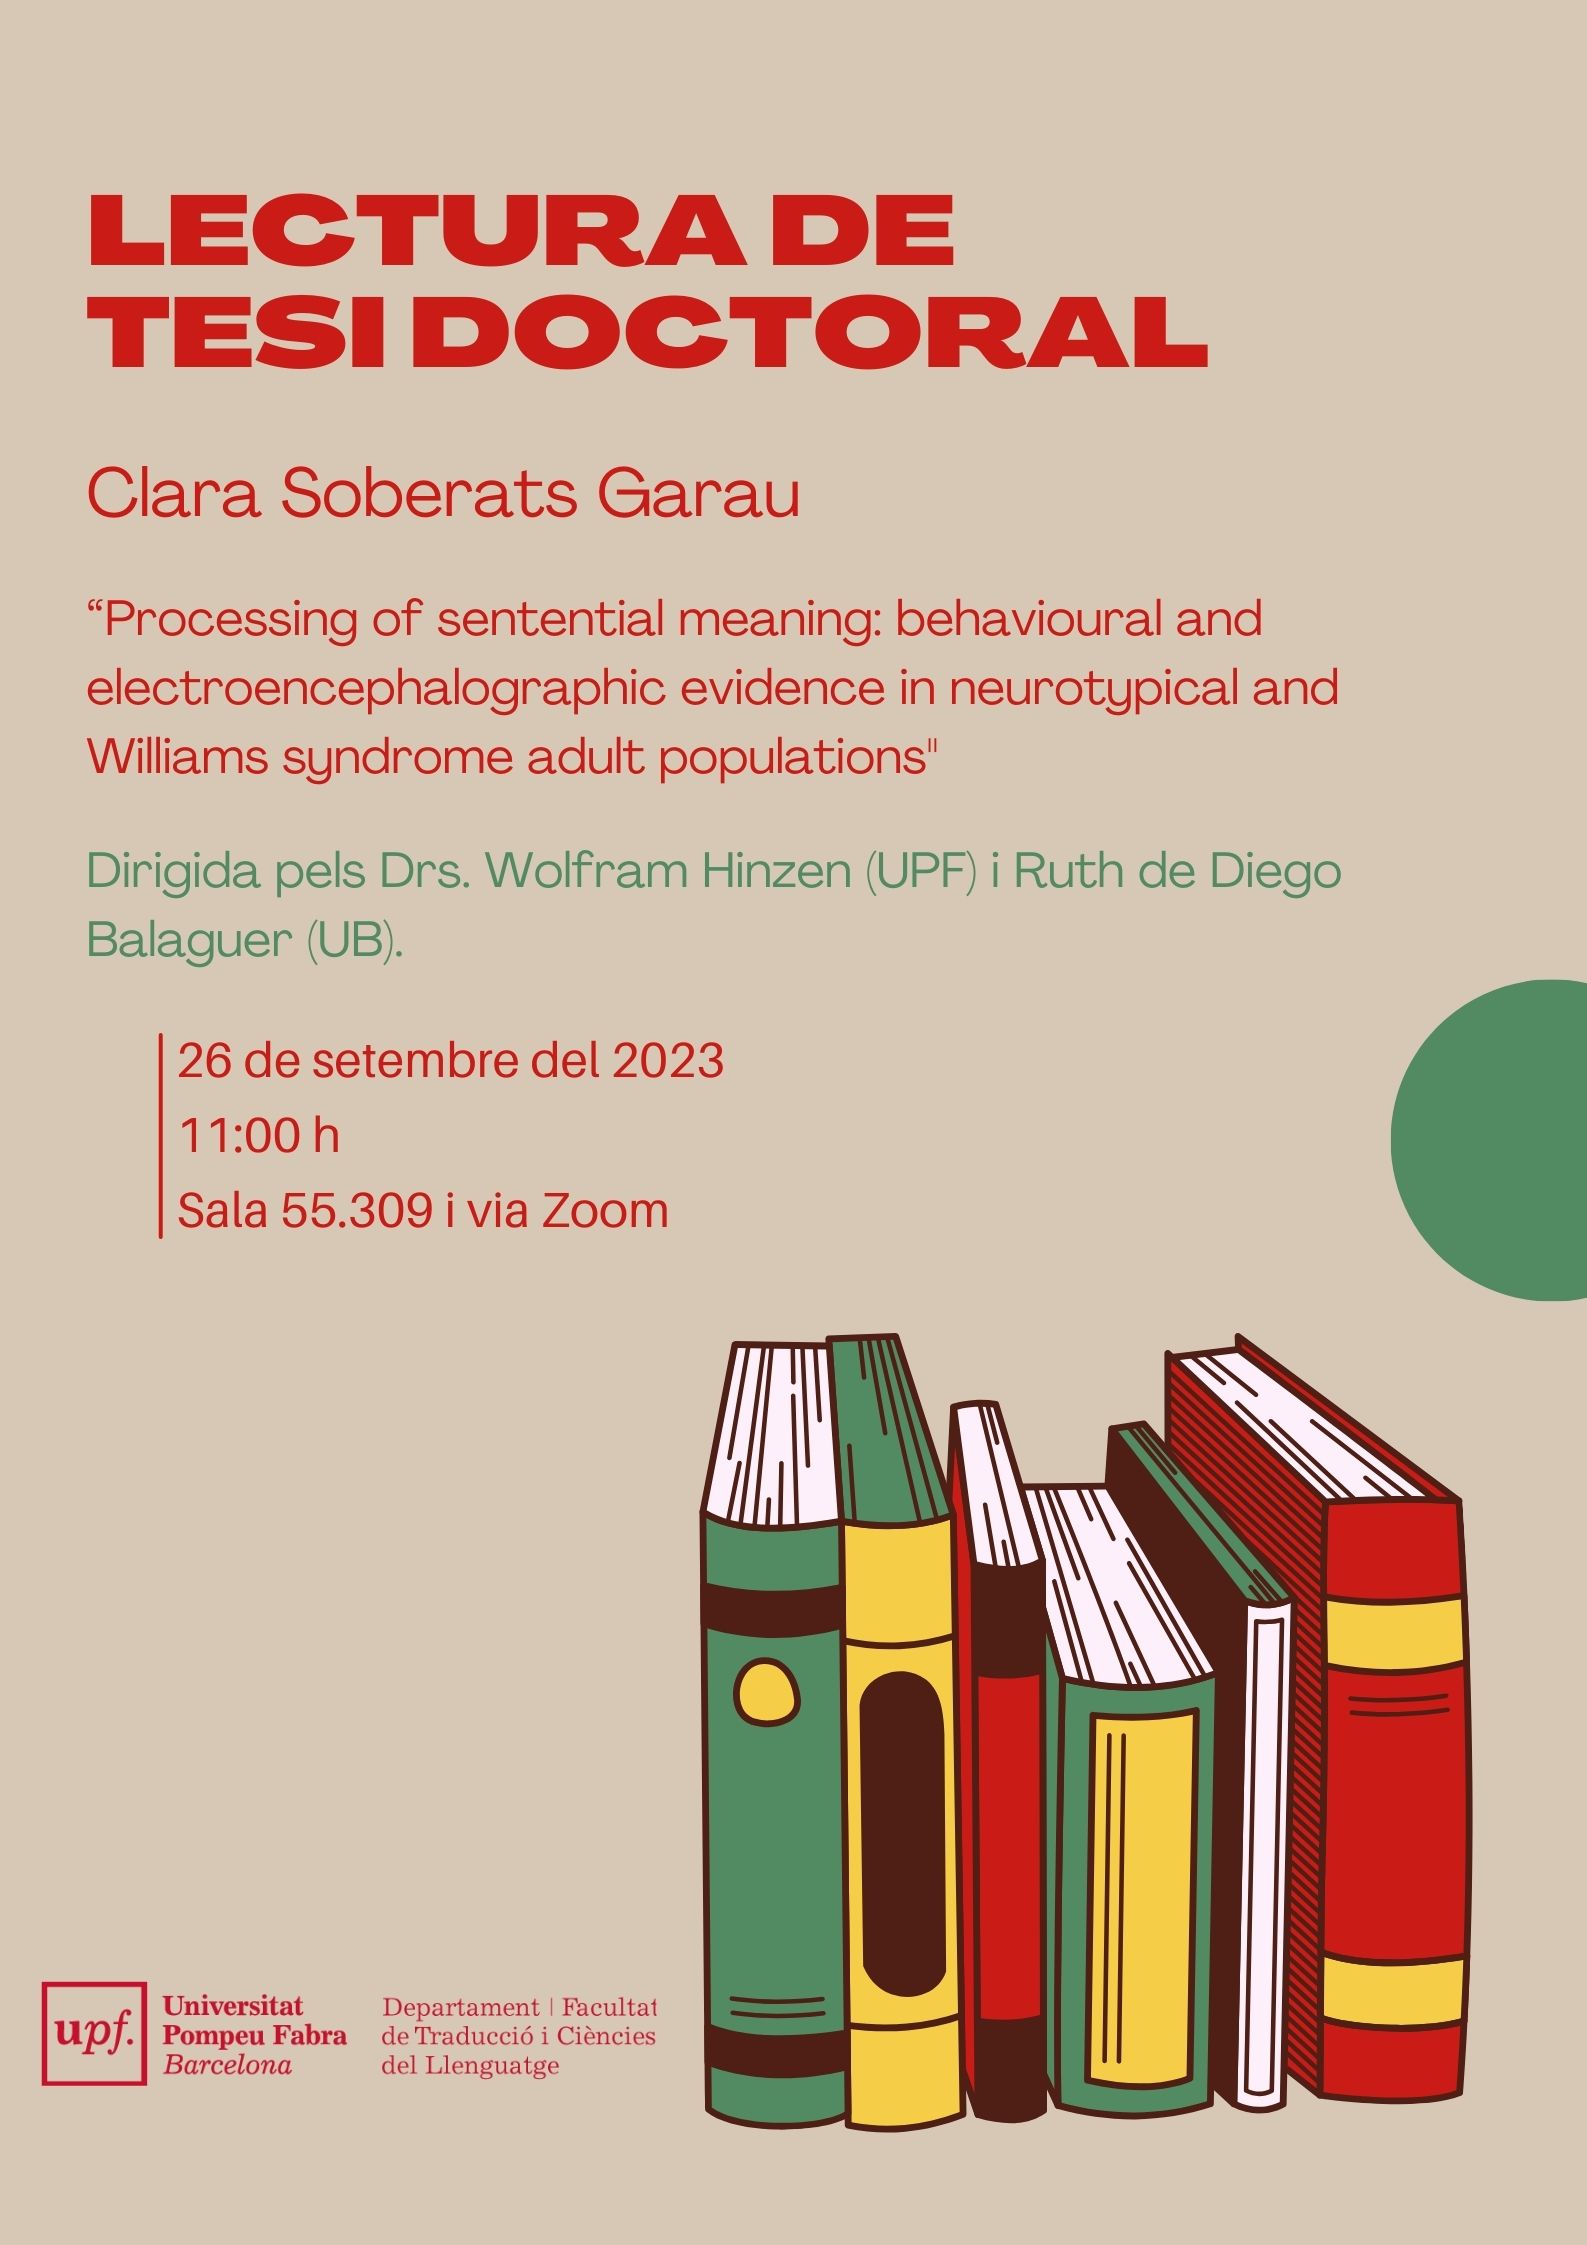 26/09/2023 Lectura de la tesi doctoral de Clara Soberats Garau, a les 11.00 hores